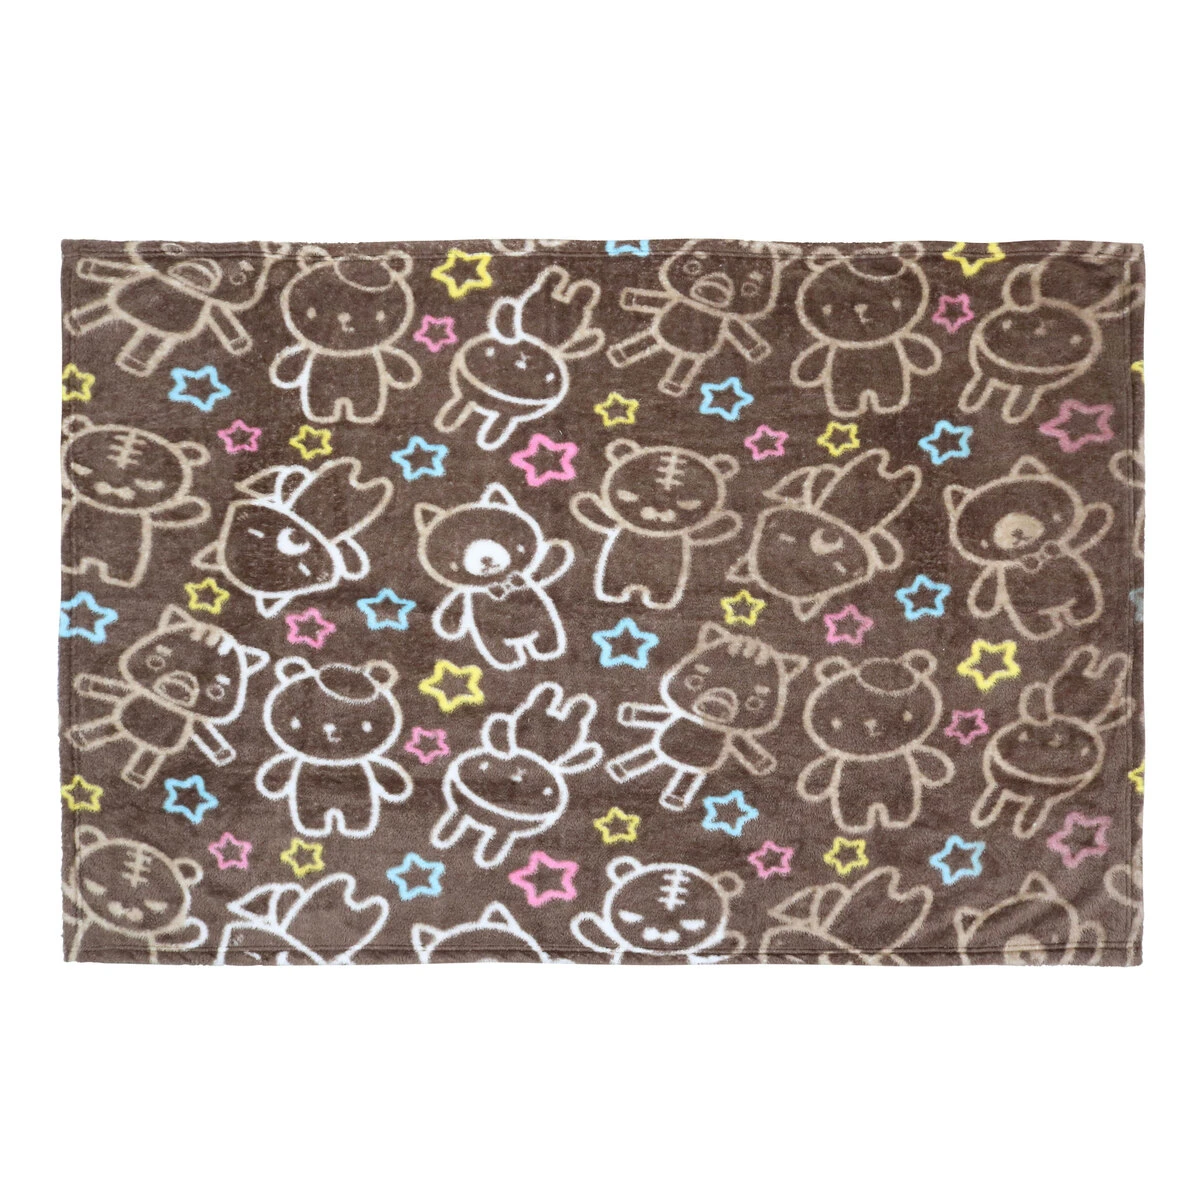 Eazzie Brownie Printed Plush Blanket (Brown)